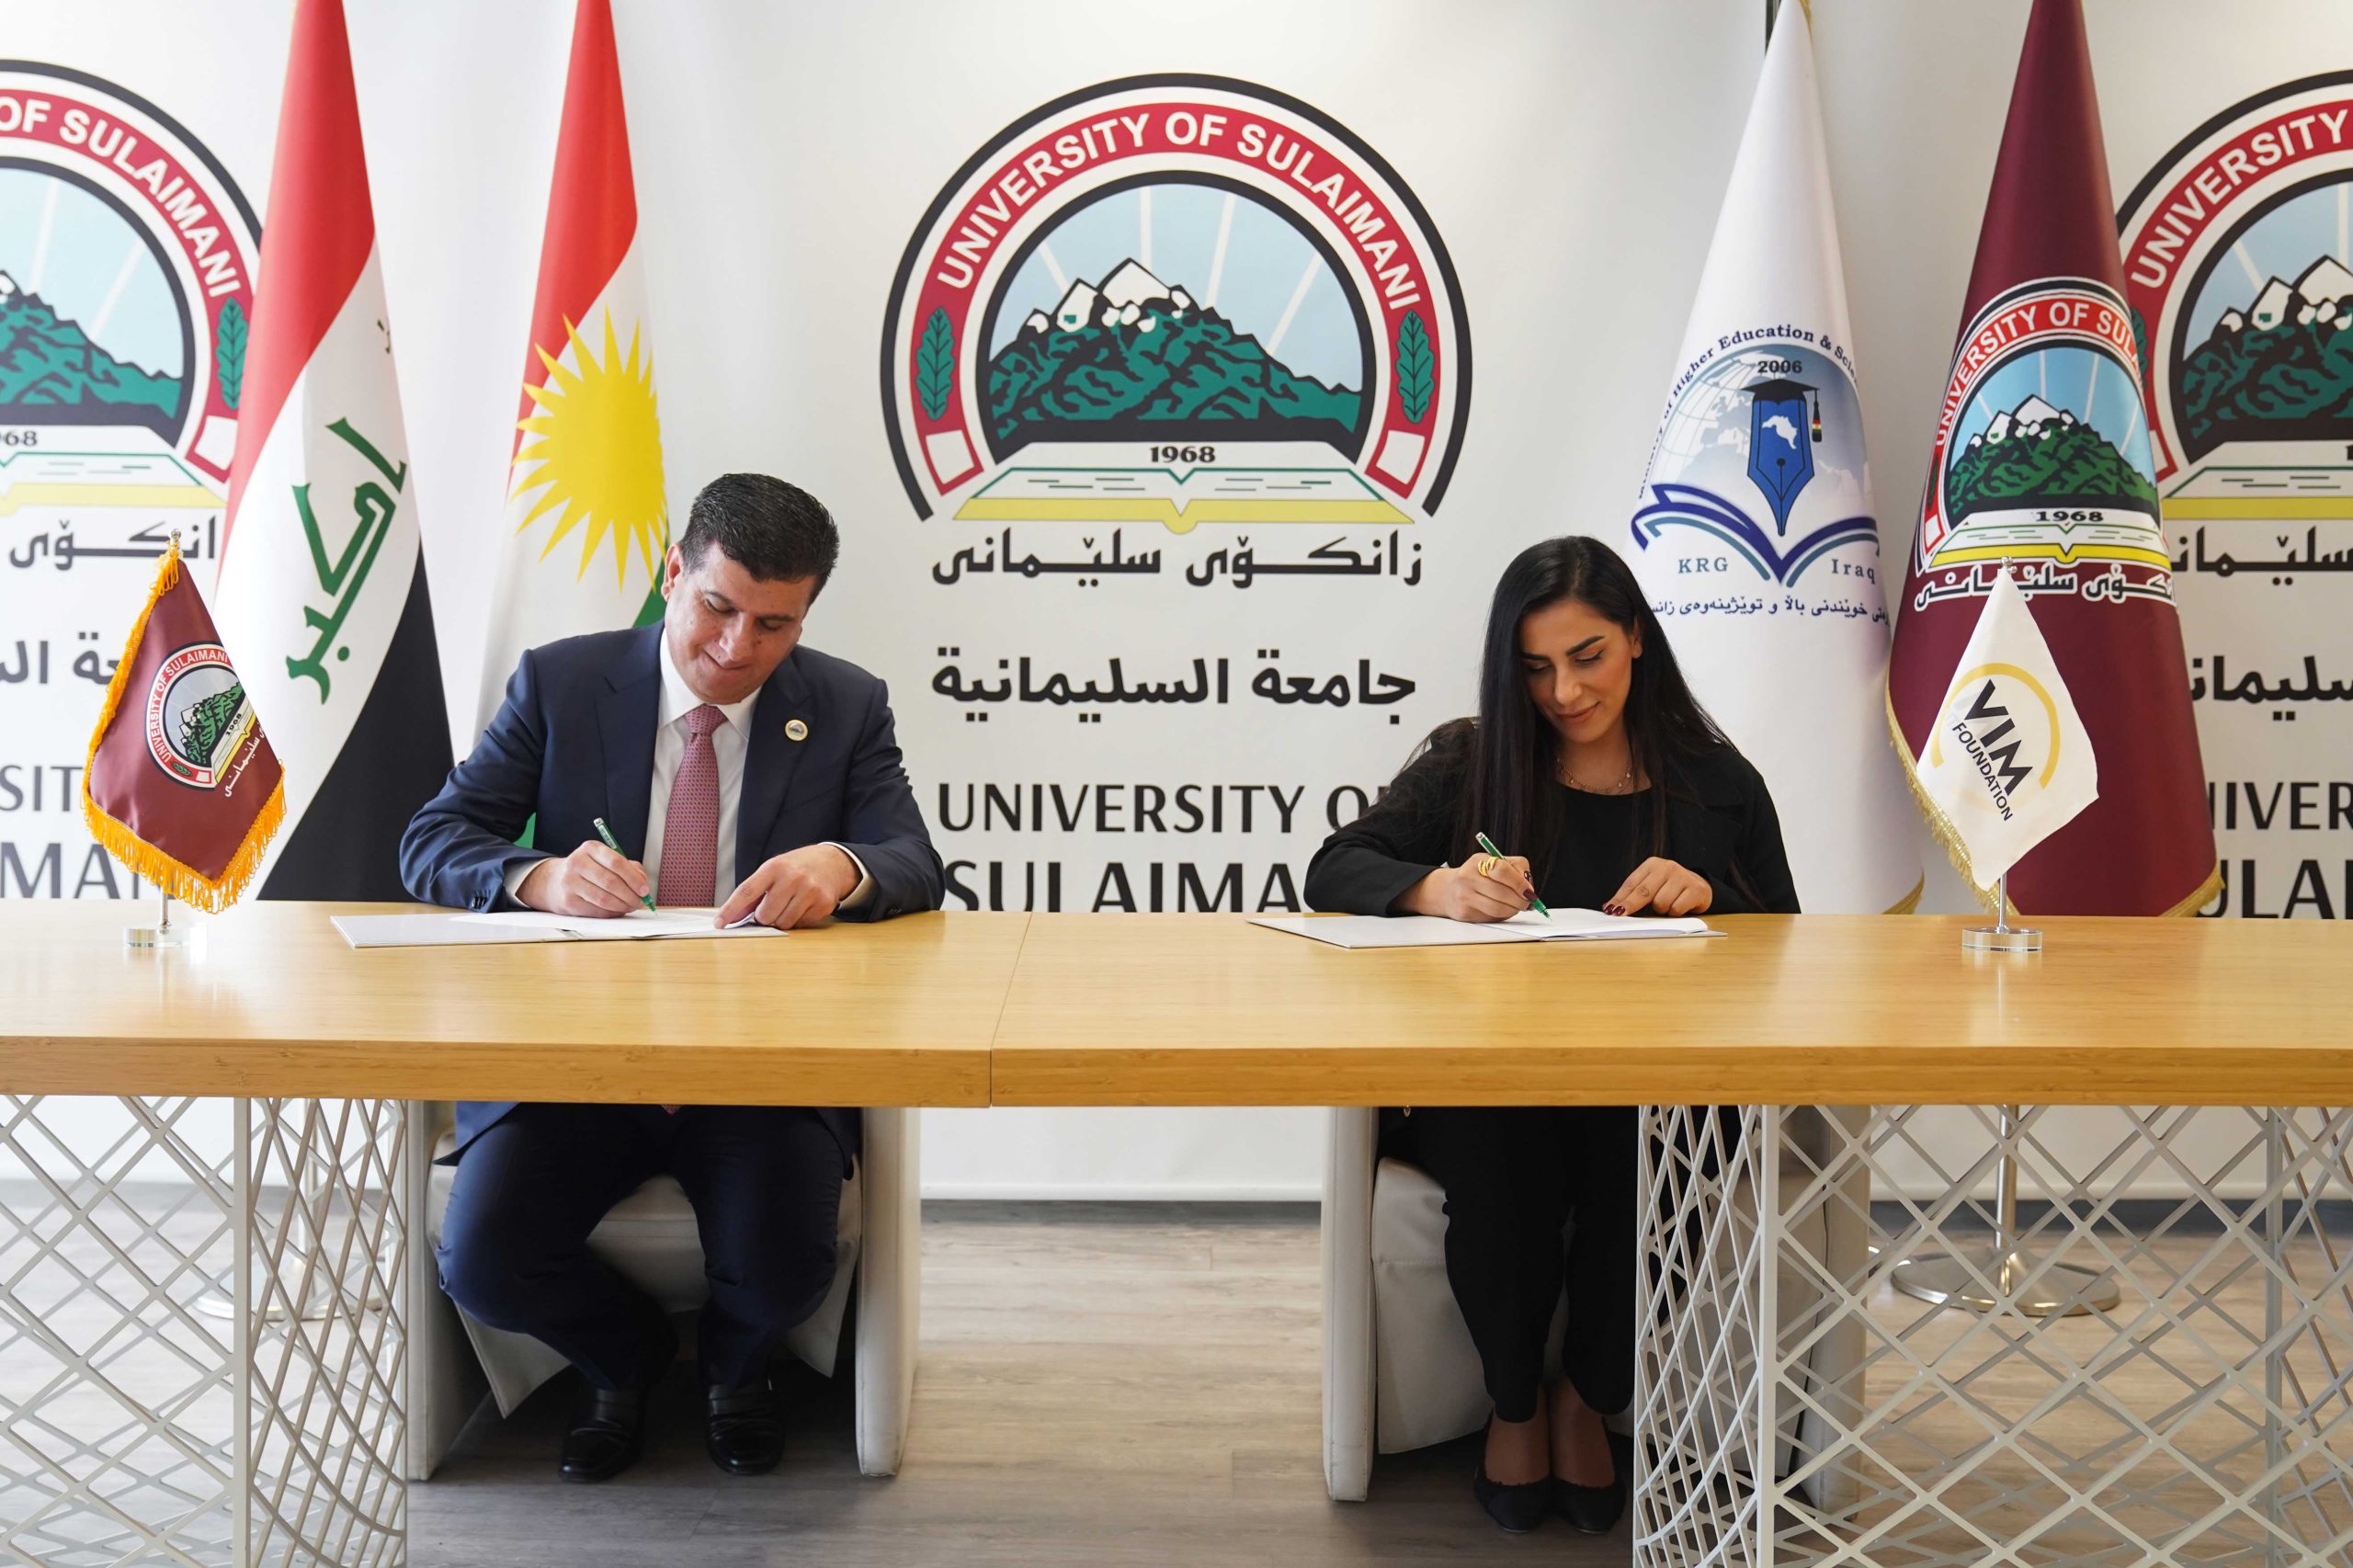 وقعت مؤسسة فيم وجامعة السليمانية اتفاقية مذكرة تفاهم.